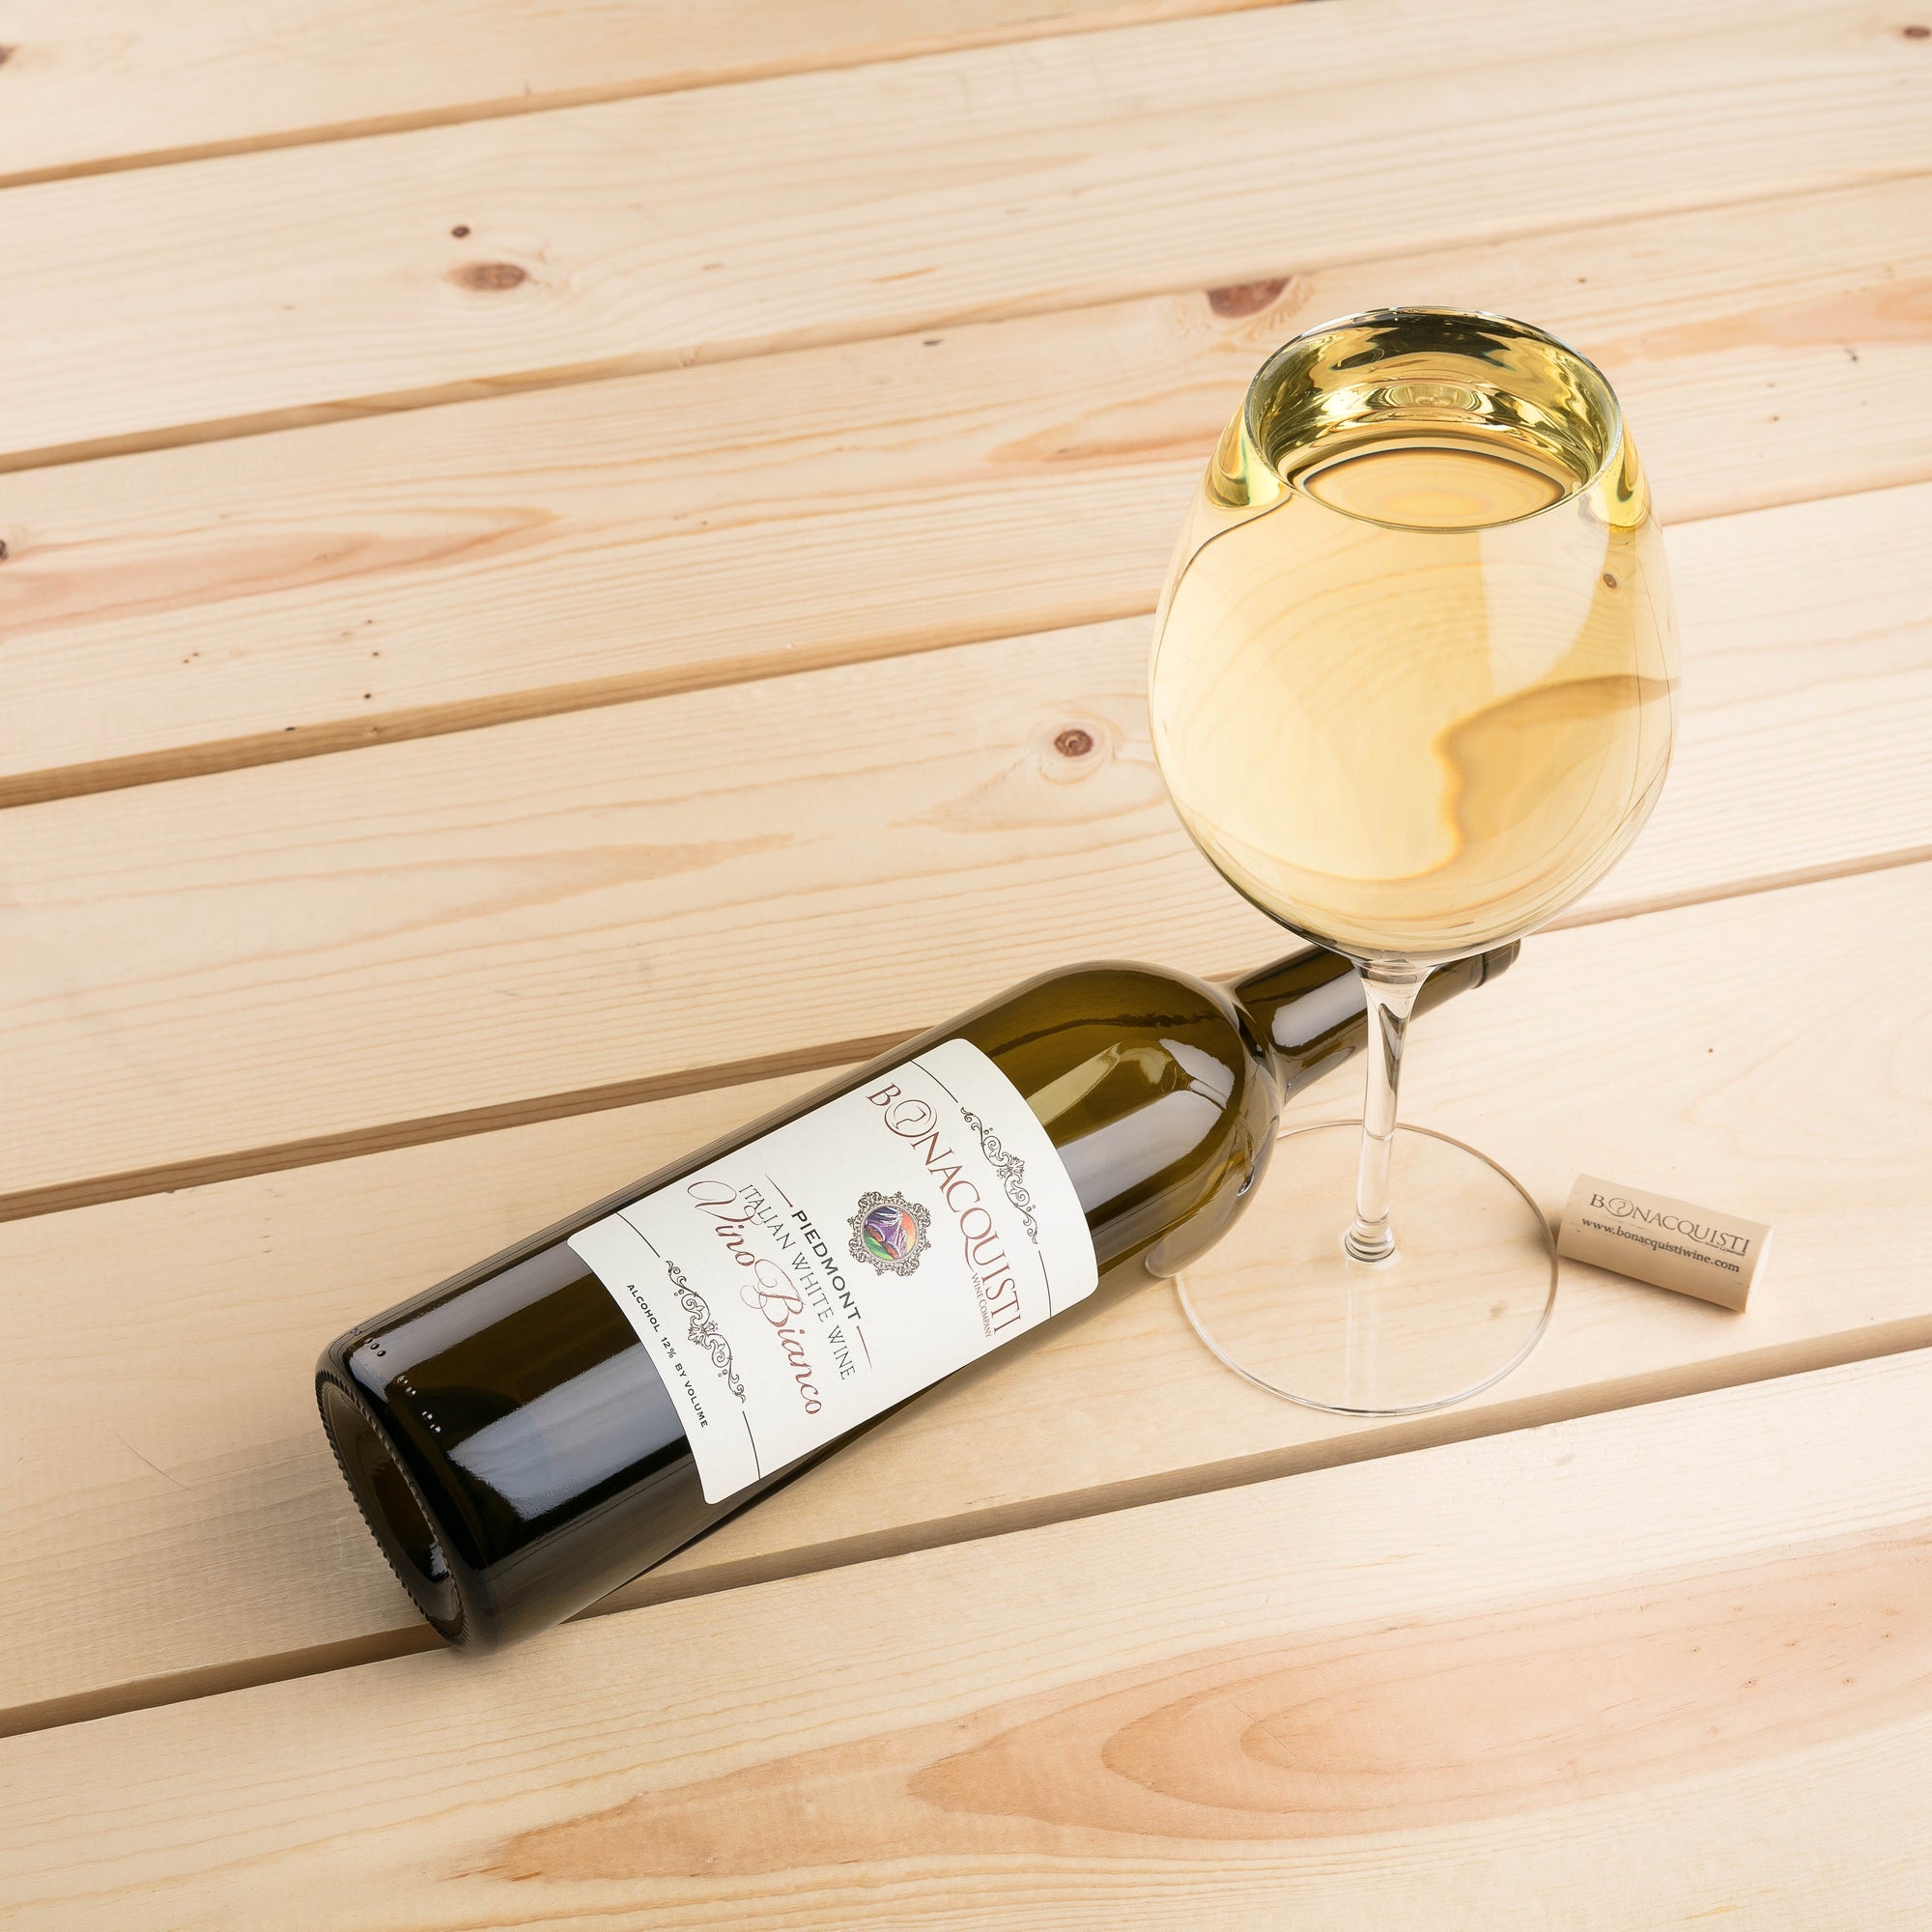 Vino Bianco - Italian White Wine